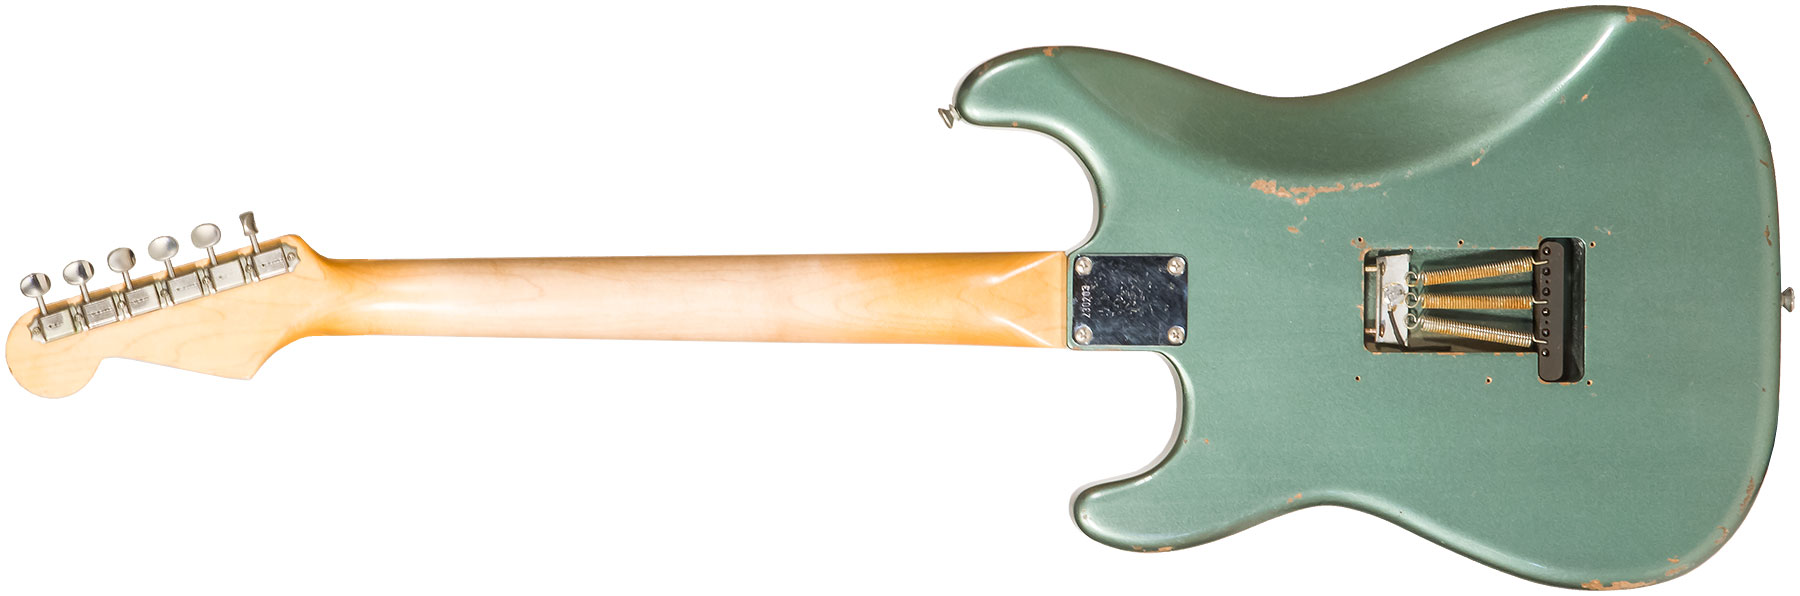 Rebelrelic S-series 62 3s Trem Rw #230203 - Light Aged Sherwood Forest Green - Elektrische gitaar in Str-vorm - Variation 1